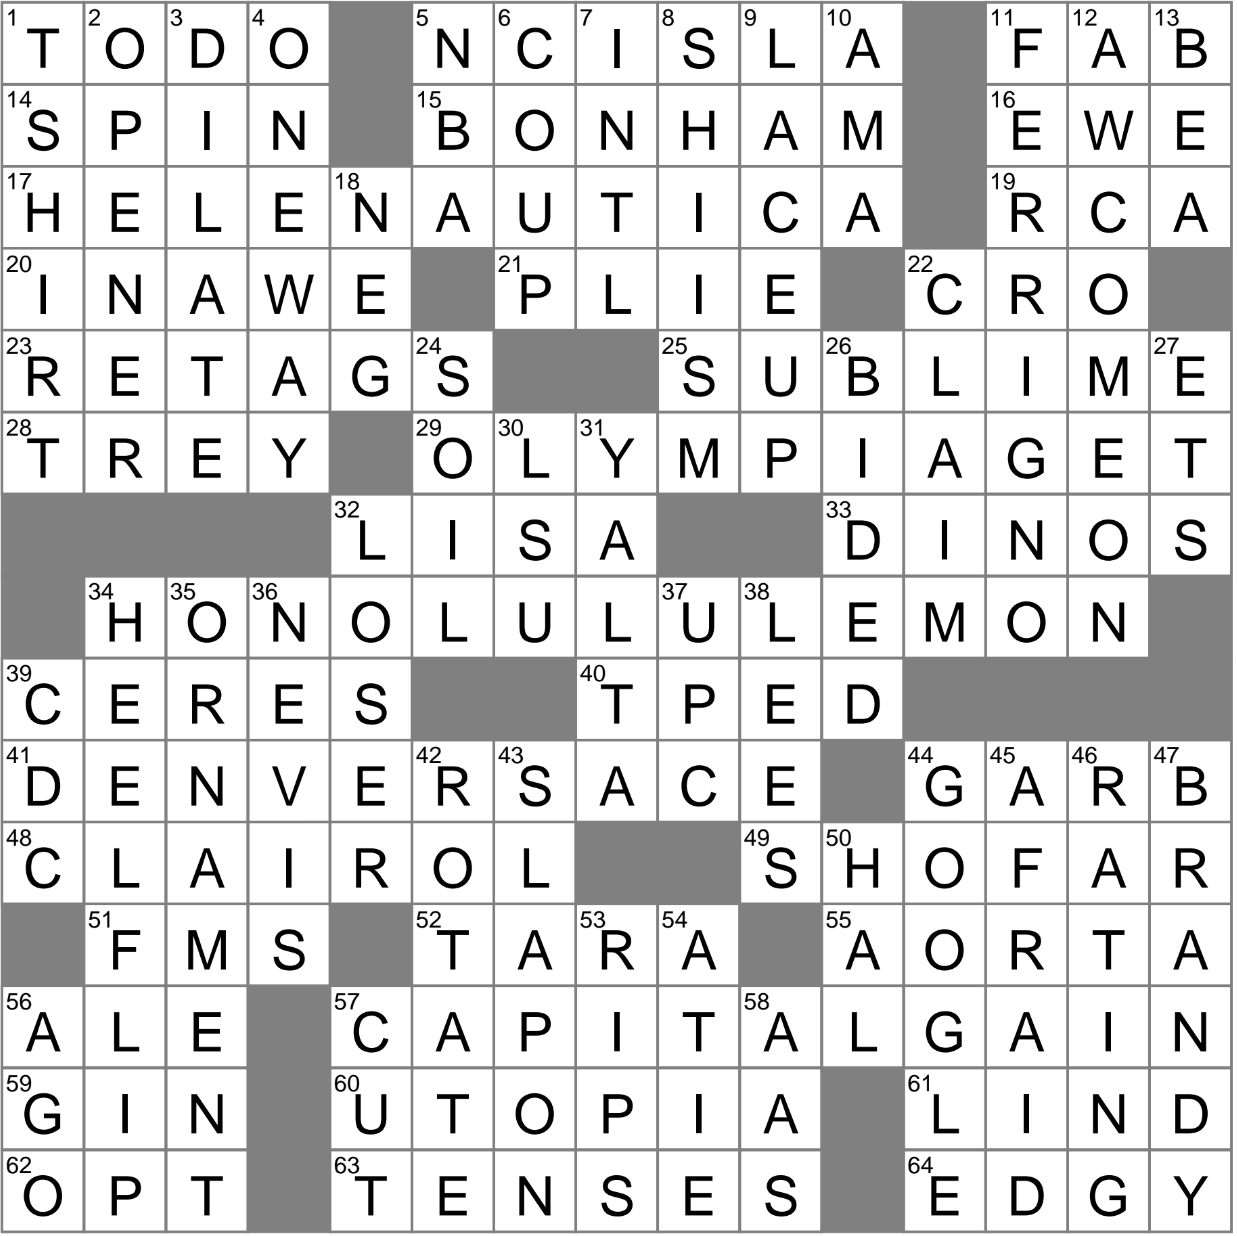 Speculate crossword puzzle clue